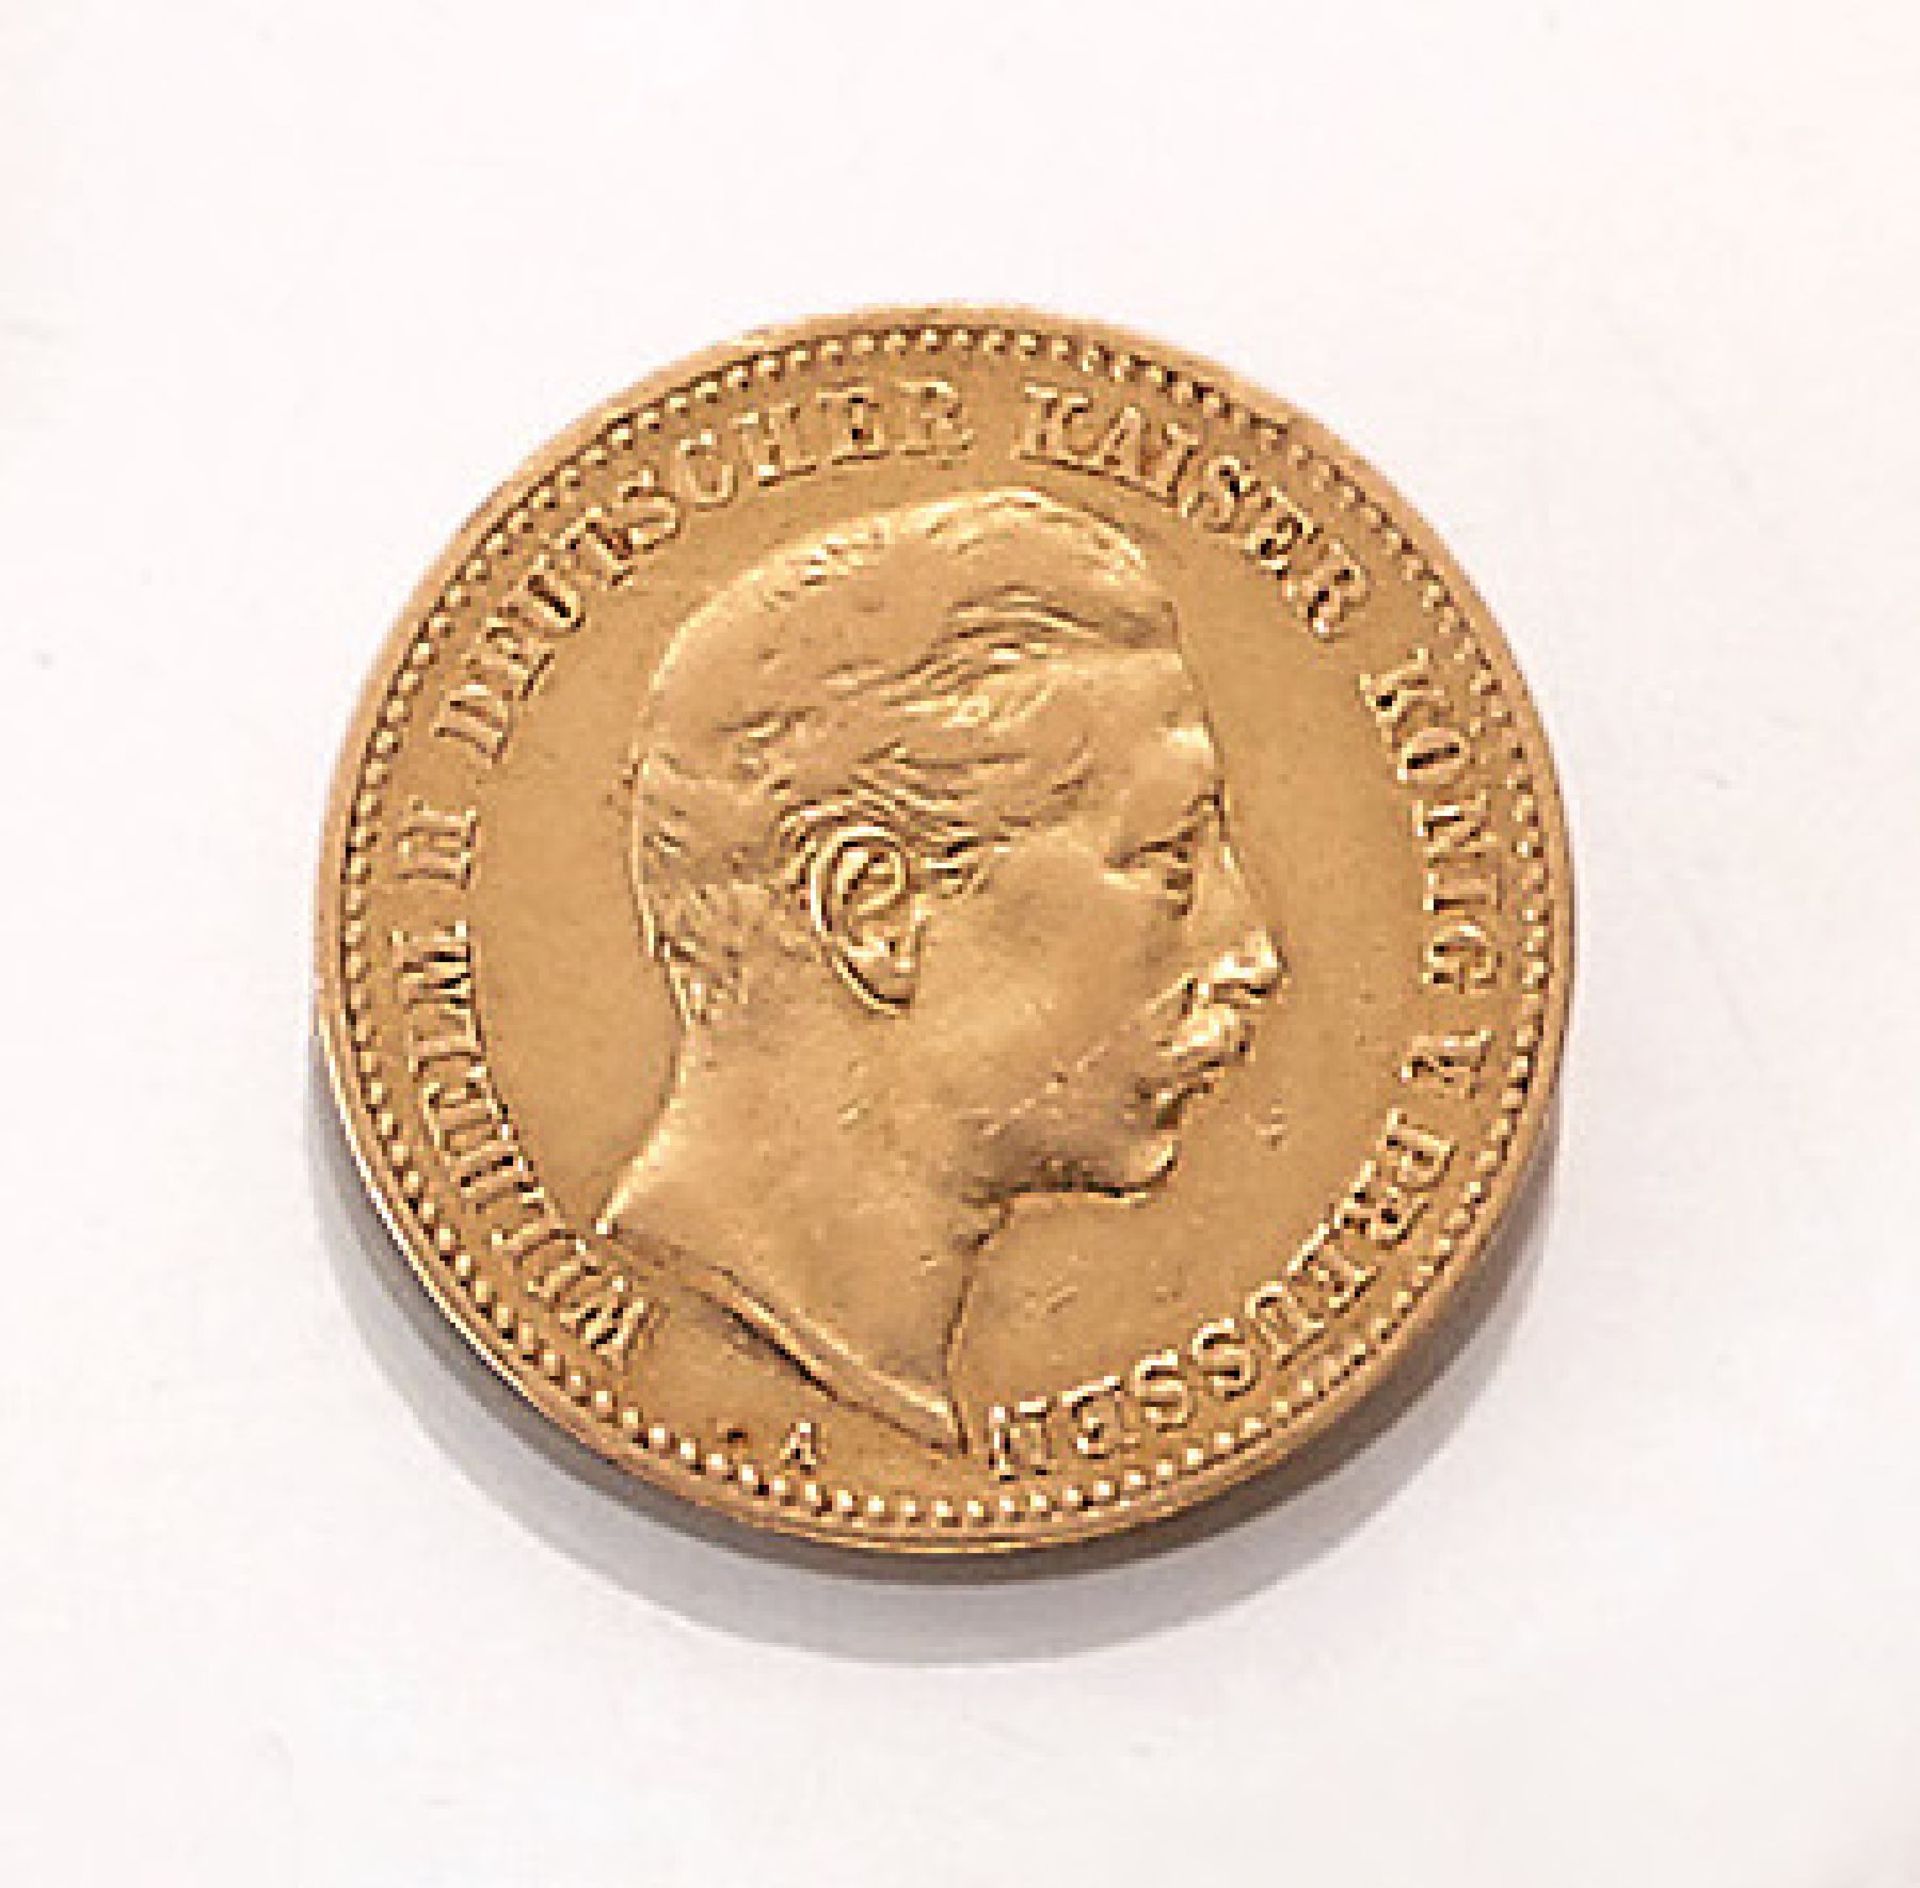 Goldmünze, 10 Mark, Deutsches Reich, 1898, Wilhelm II. deutscher Kaiser König von Preussen,